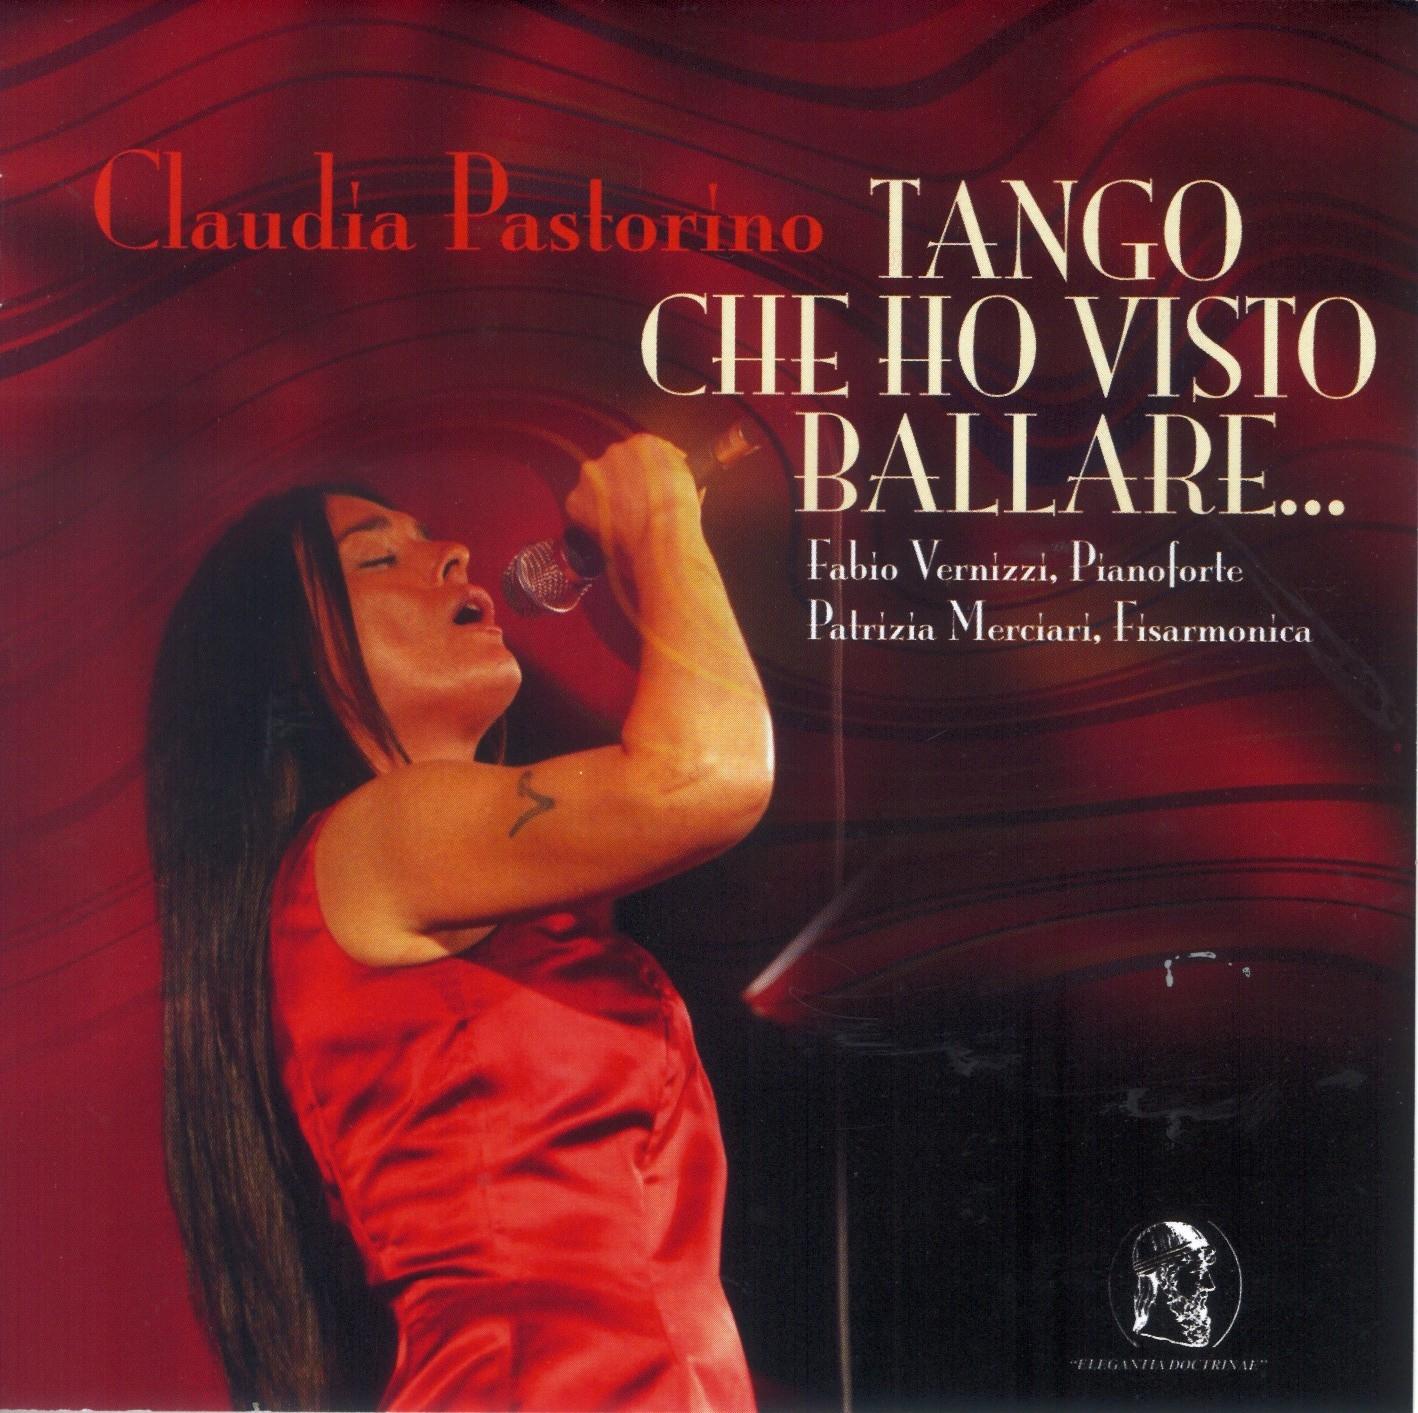 Recensione Claudia Pastorino - Tango che ho visto ballare …